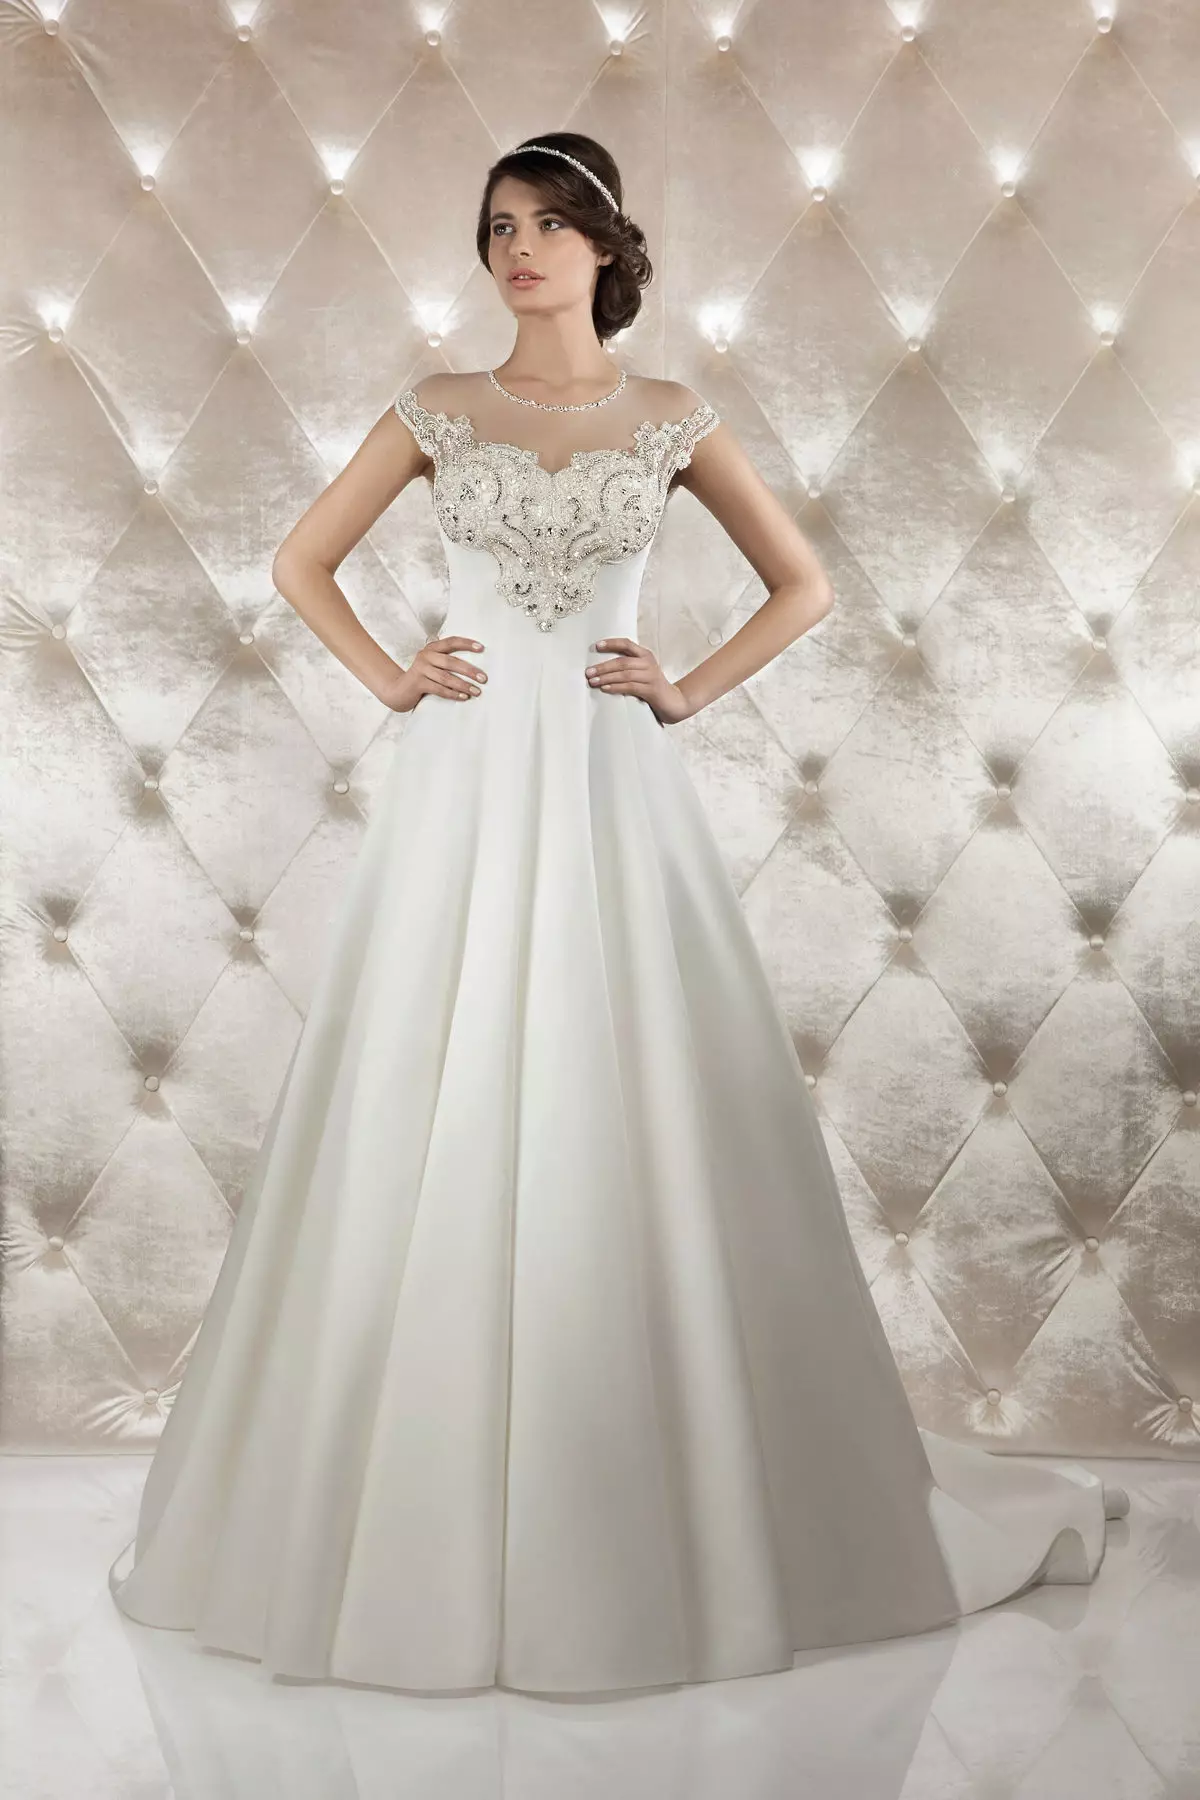 तान्याबाट विवाह पोशाक Rhinestones 201 by को साथ ग्रिन्।